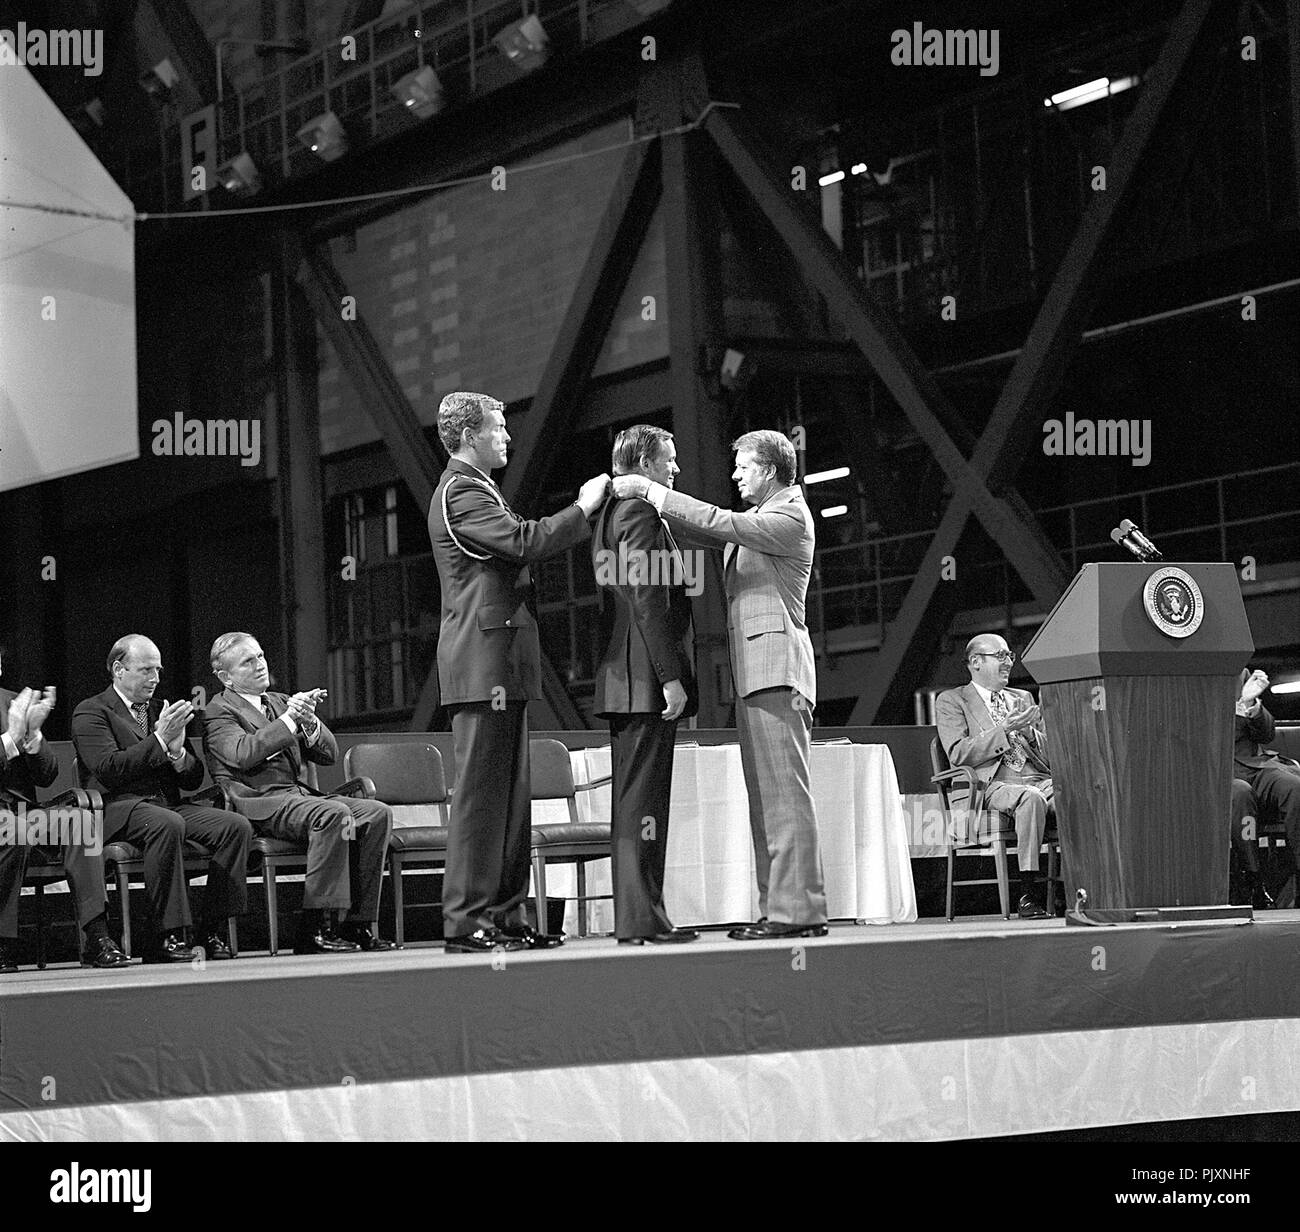 Cape Canaveral, FL - (Datei) - Astronaut Neil A Armstrong erhält den ersten Congressional Space Medal of Honor vom Präsidenten der Vereinigten Staaten Jimmy Carter, unterstützt von Kapitän Robert Peterson am 1. Oktober 1978. Armstrong, einer von sechs Astronauten der Medaille während der Zeremonien statt im Vehicle Assembly Building (VAB) vorgelegt werden soll, wurde für seine Leistung während der Gemini 8 Mission und die Apollo-11-Mission, als er den ersten Fuß auf den Mond gesetzt ausgezeichnet. Credit: NASA über CNP/MediaPunch Stockfoto